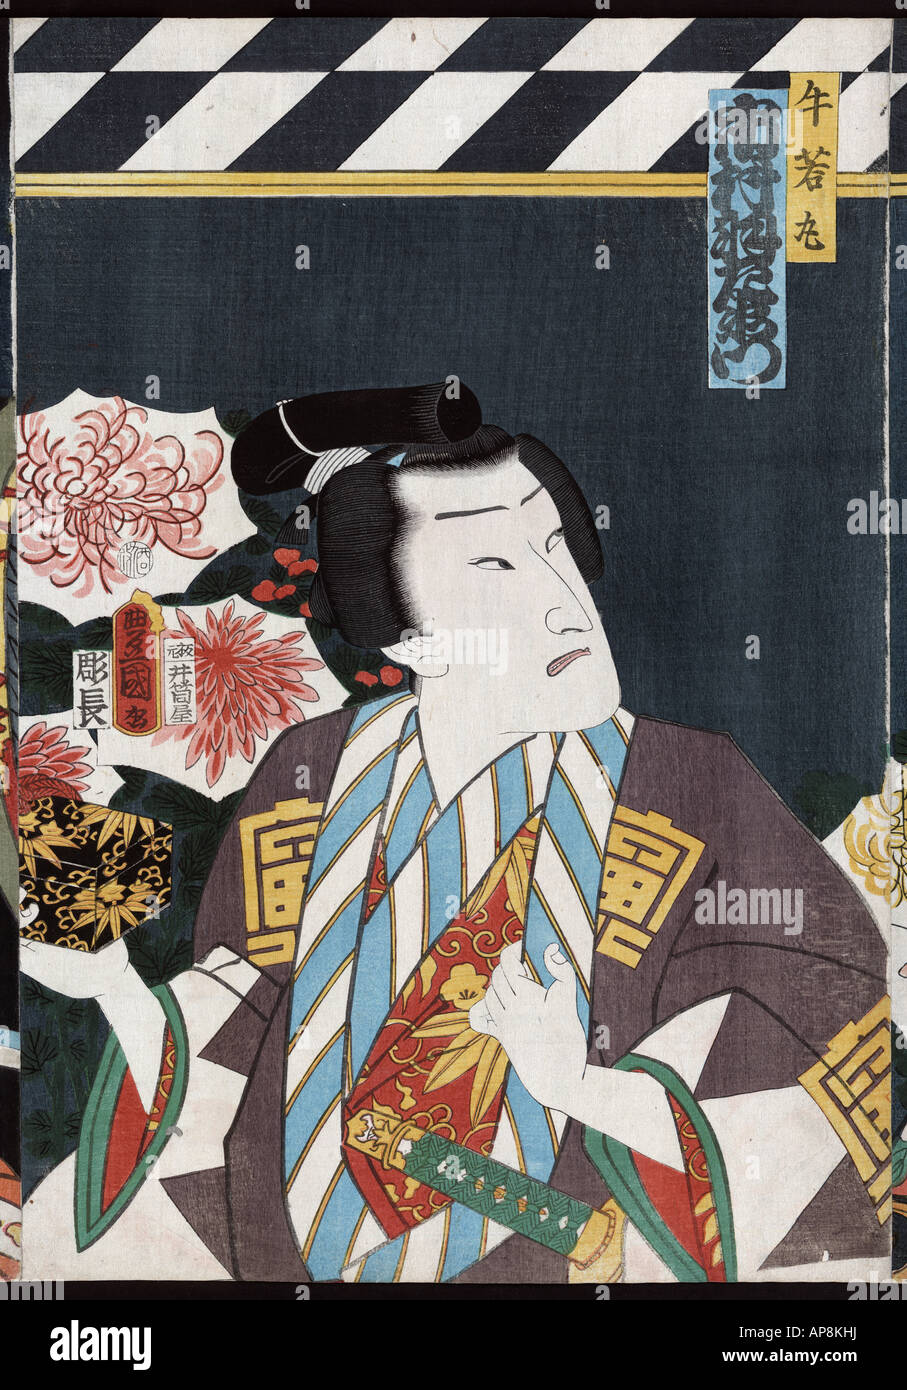 Ritratti di attori, spesso giocare ruoli, Giappone tra il 1860 e il 1866 (guarnizione data: 1860.7) Foto Stock